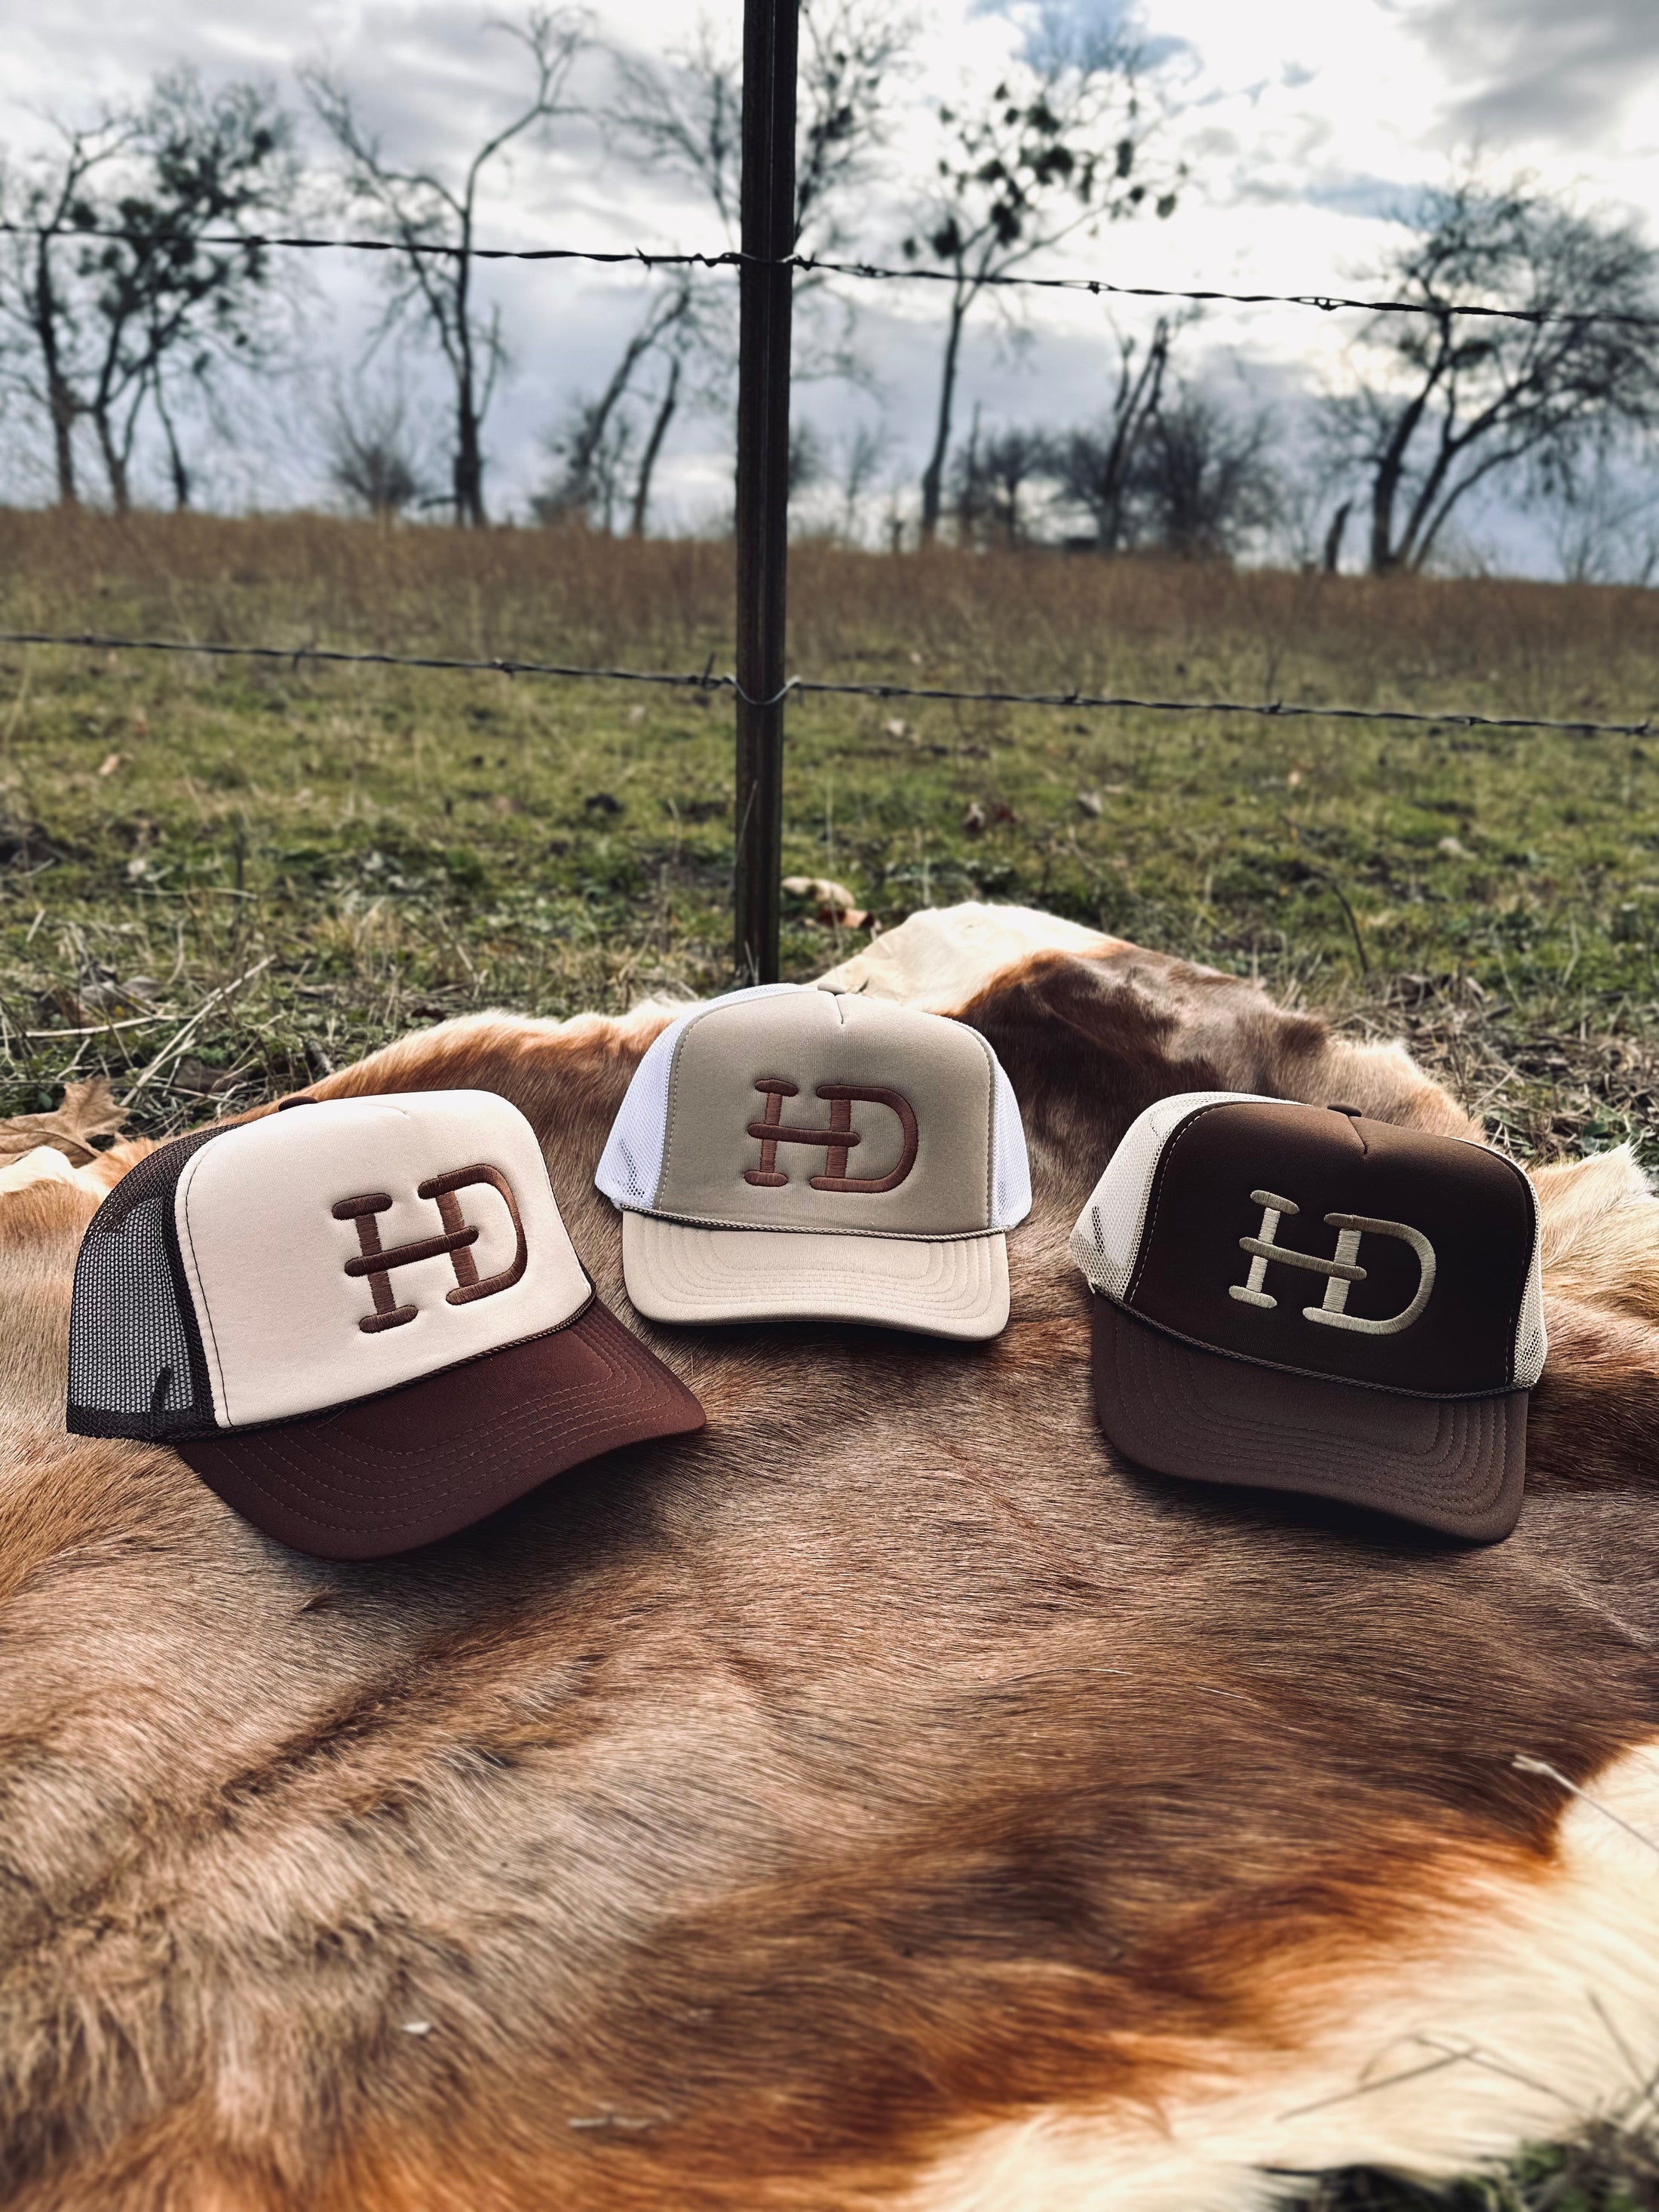 HD Brand Mesh Trucker Hat -Dark Brown